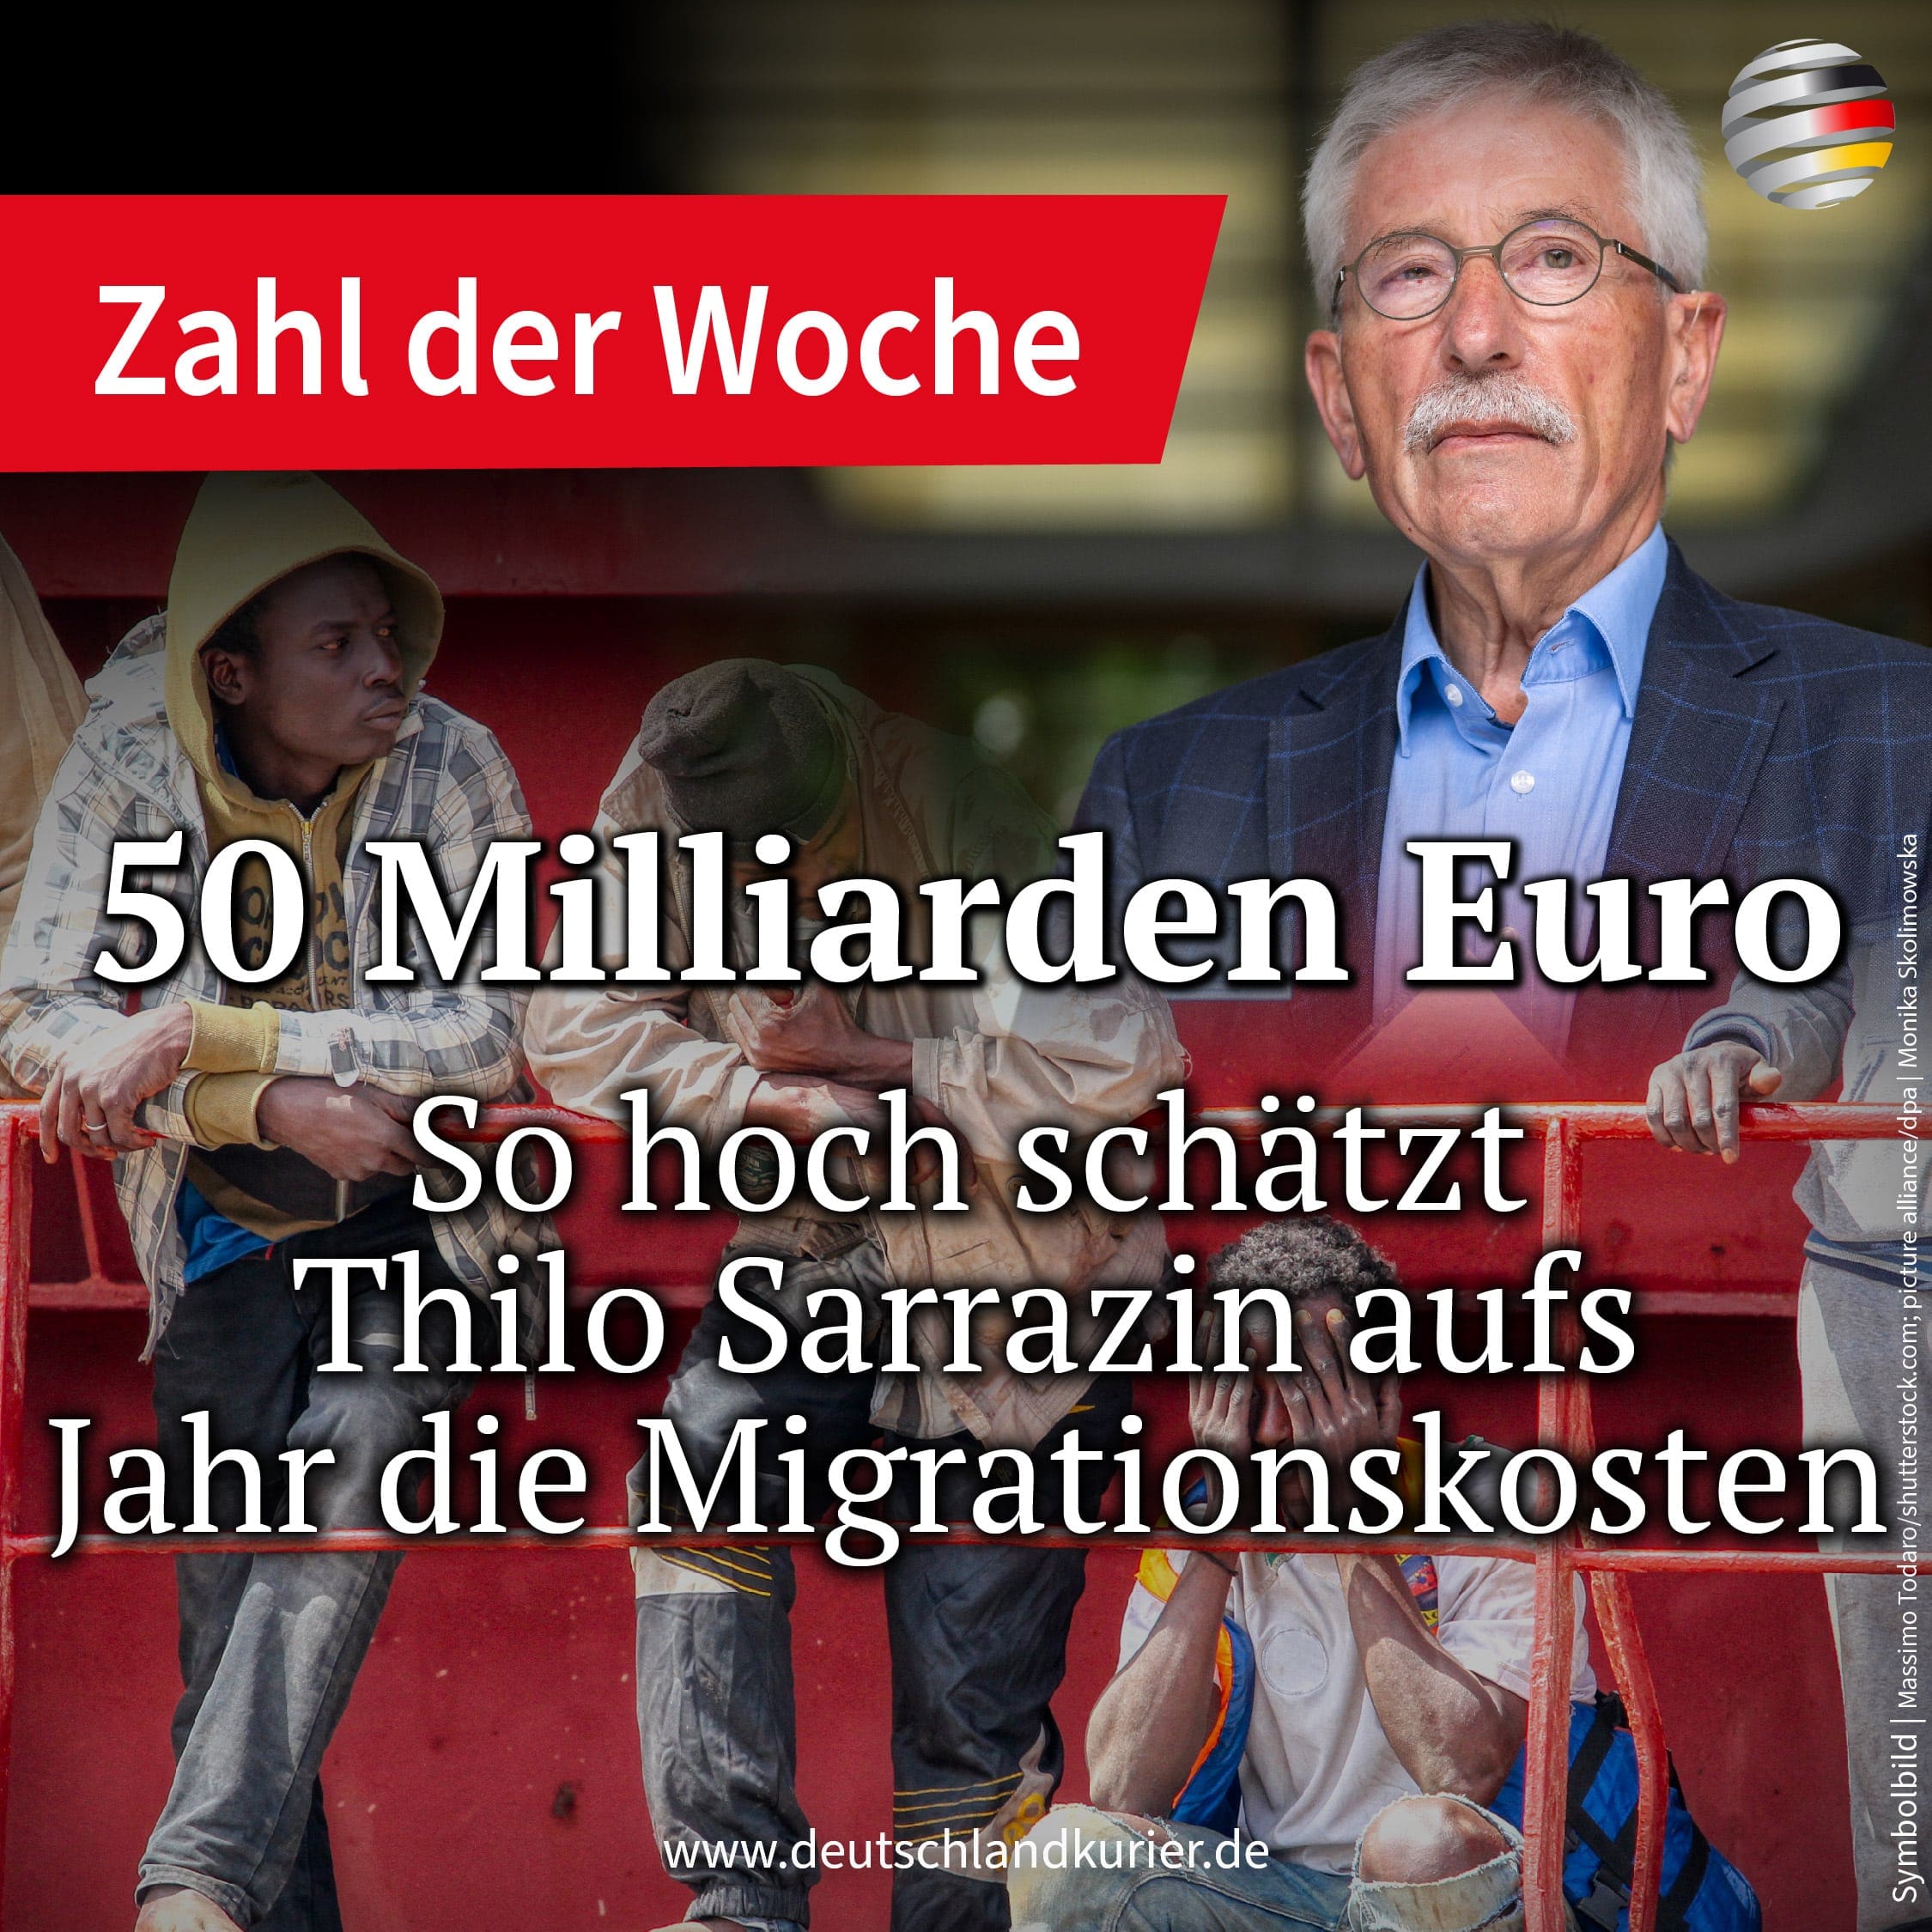 die-geschaetzten-migrationskosten-belaufen-sich-laut-thilo-sarrazin-auf-50-milliarden-euro-pro-jahr